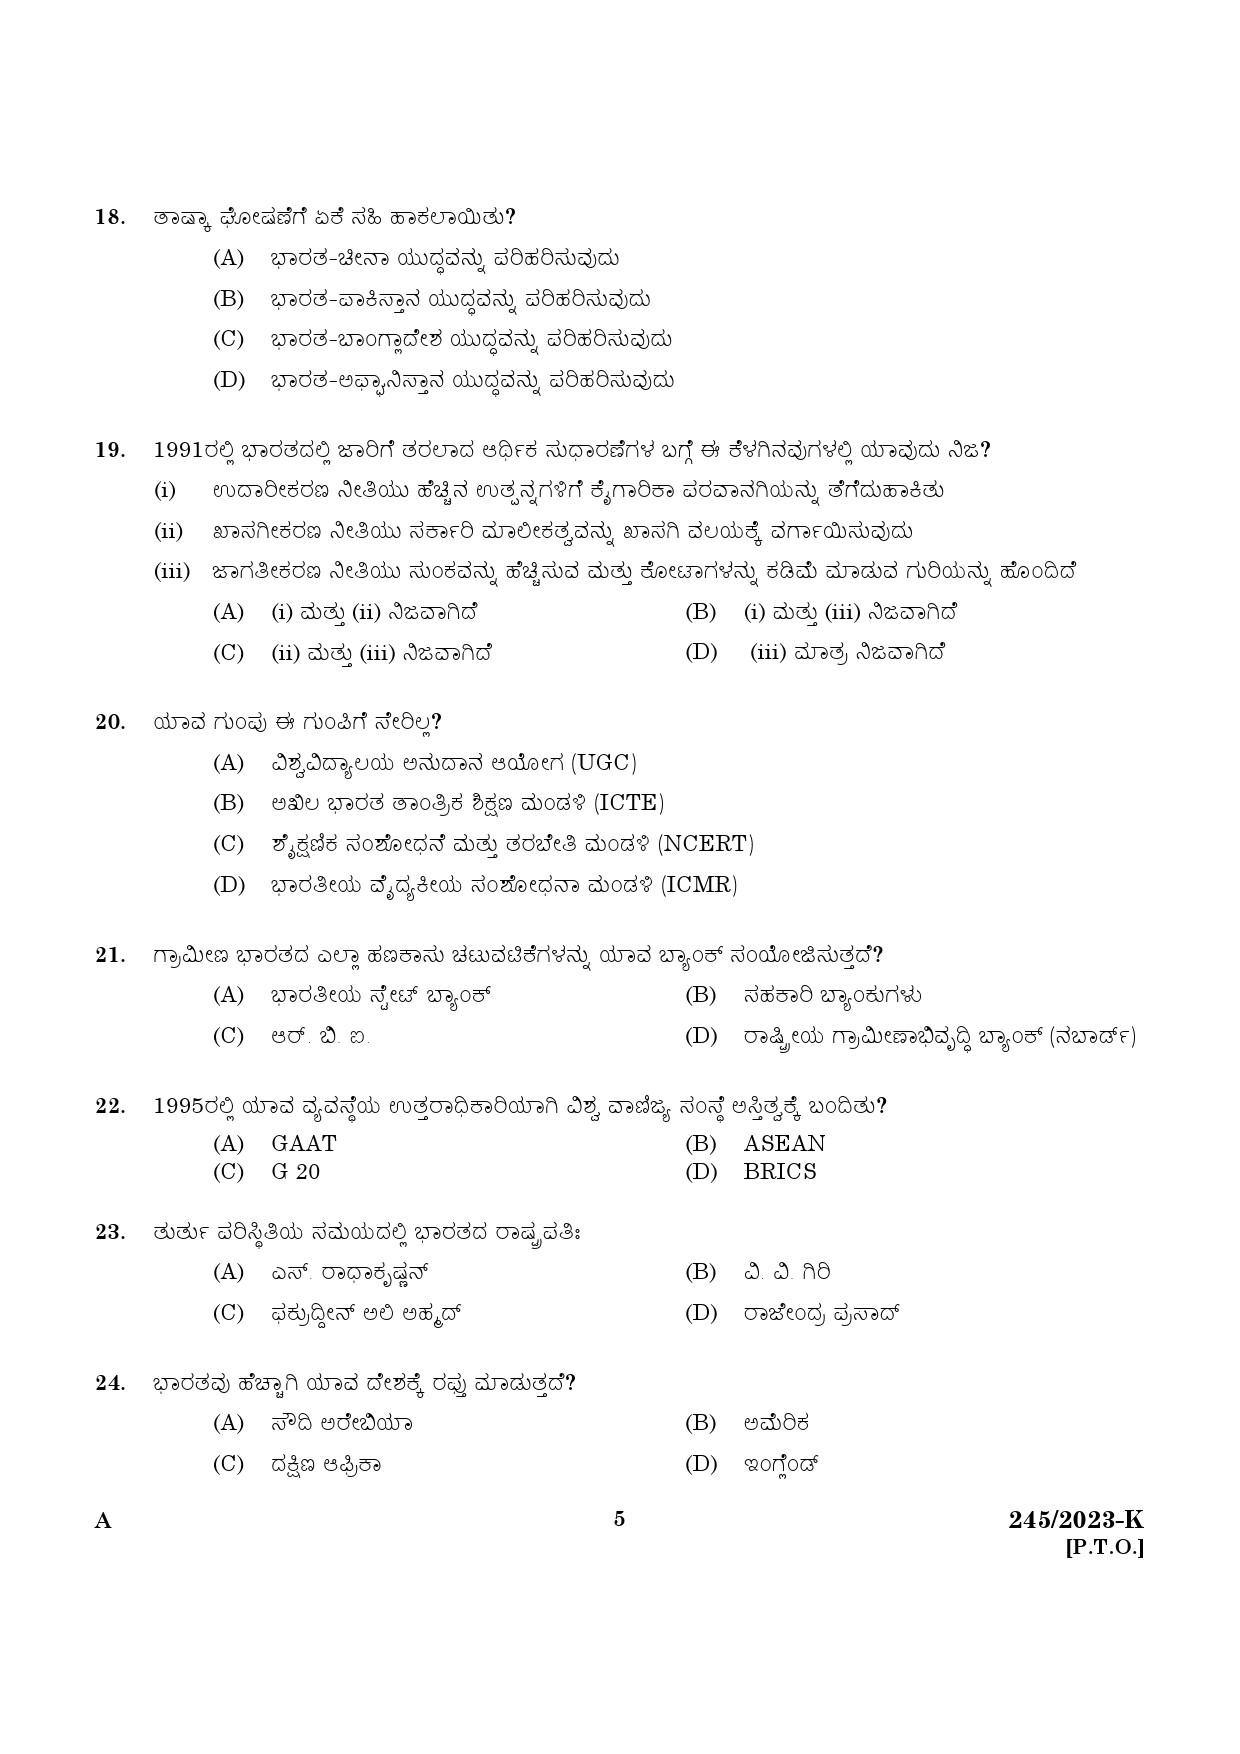 KPSC LGS Kannada Exam 2023 Code 2452023 K 3